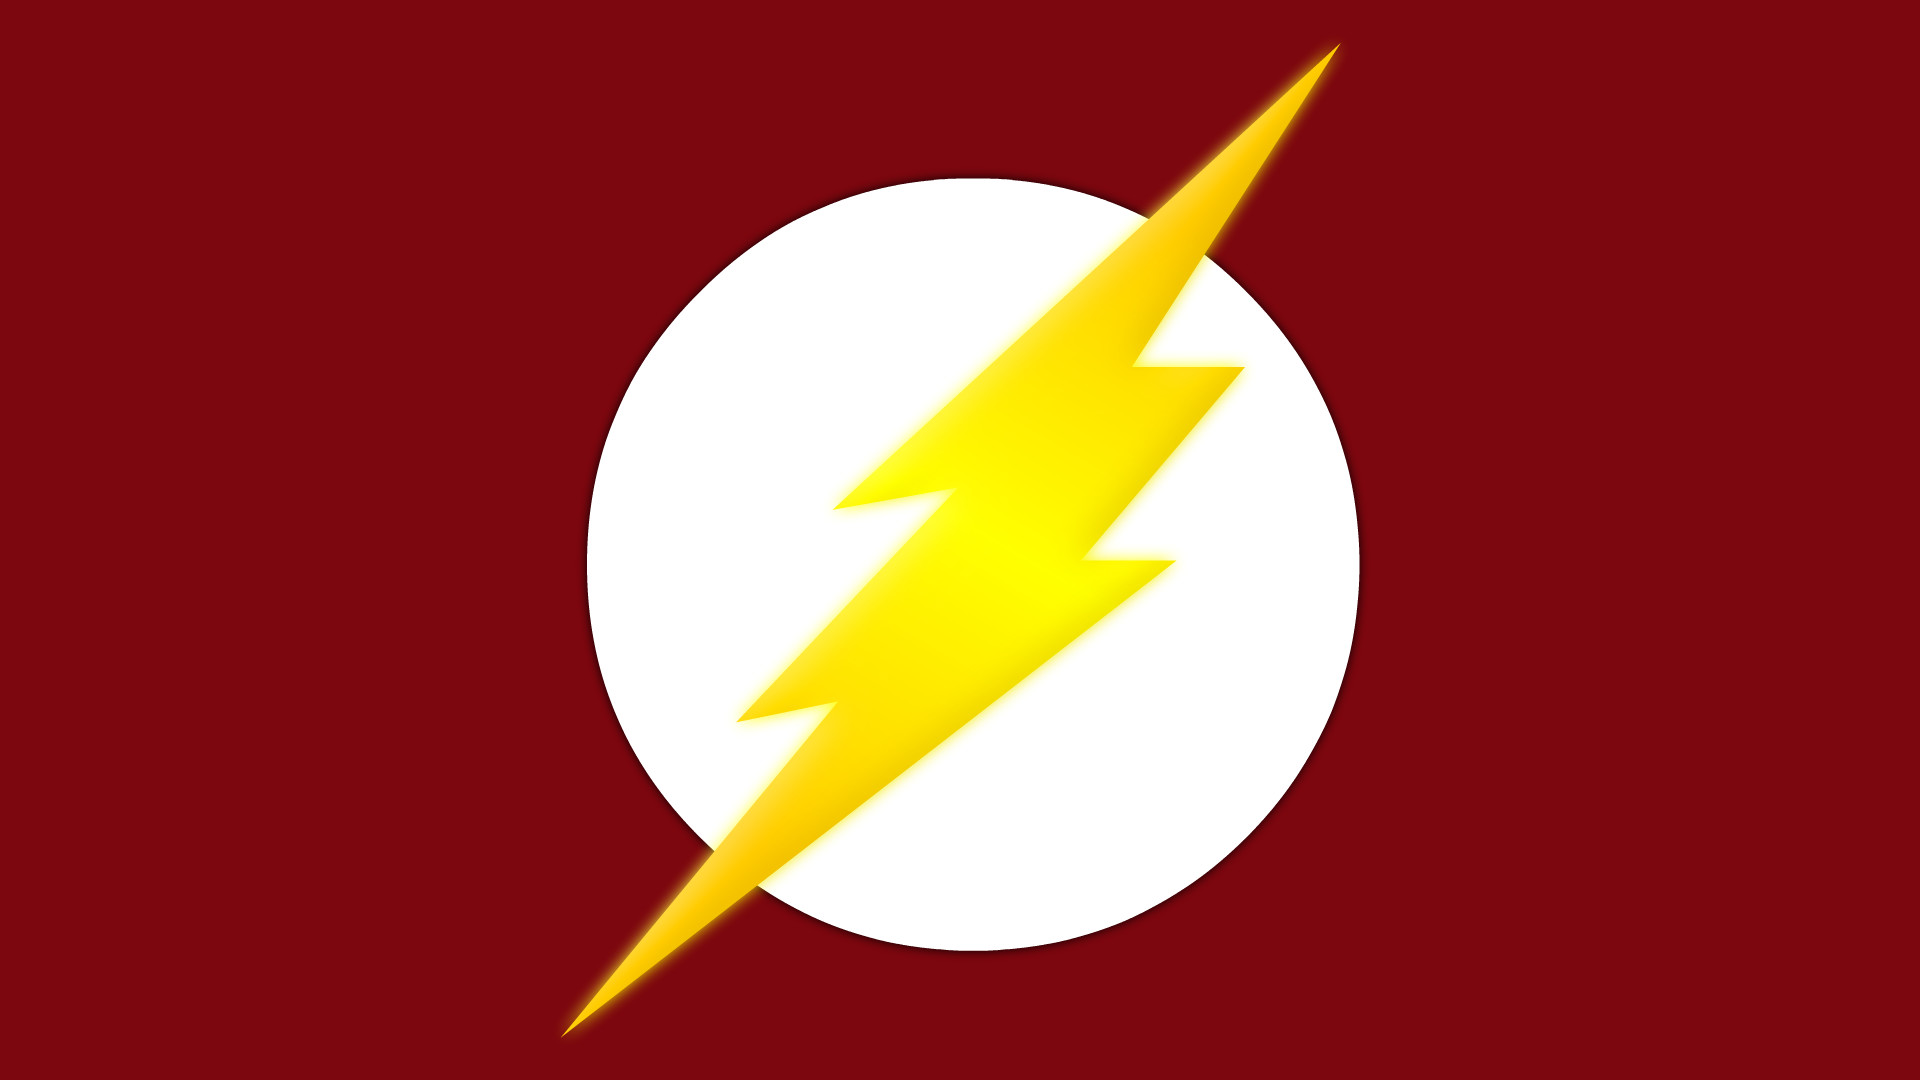 1920x1080 The Flash Symbol by Yurtigo